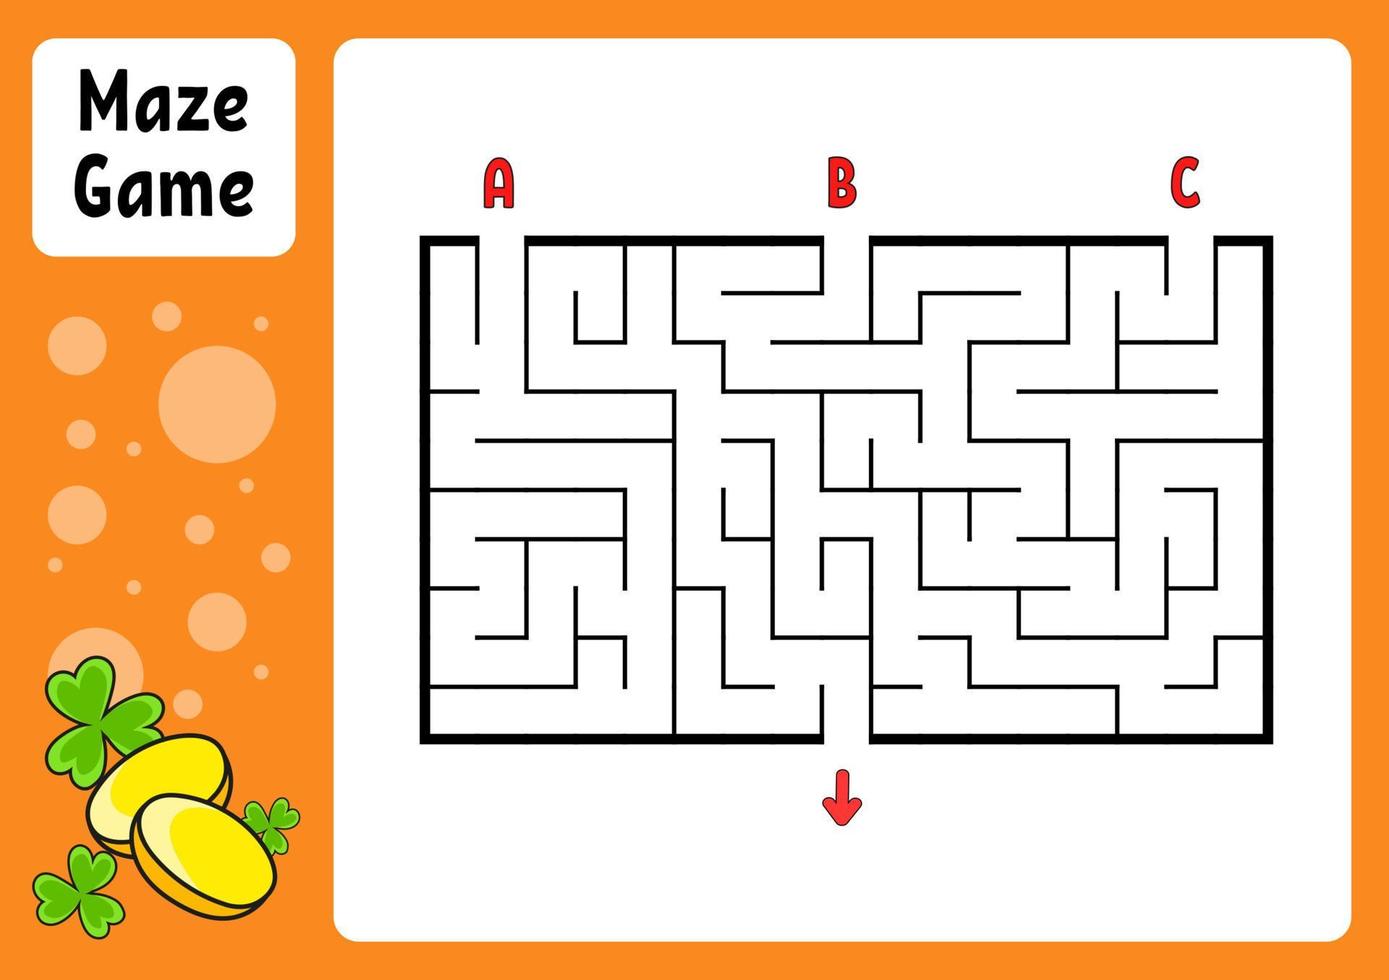 rektangel labyrint. spel för barn. tre ingångar, en utgång. utbildning arbetsblad. pussel för barn. labyrint gåta. färg vektor illustration. hitta rätt väg. tecknad figur.